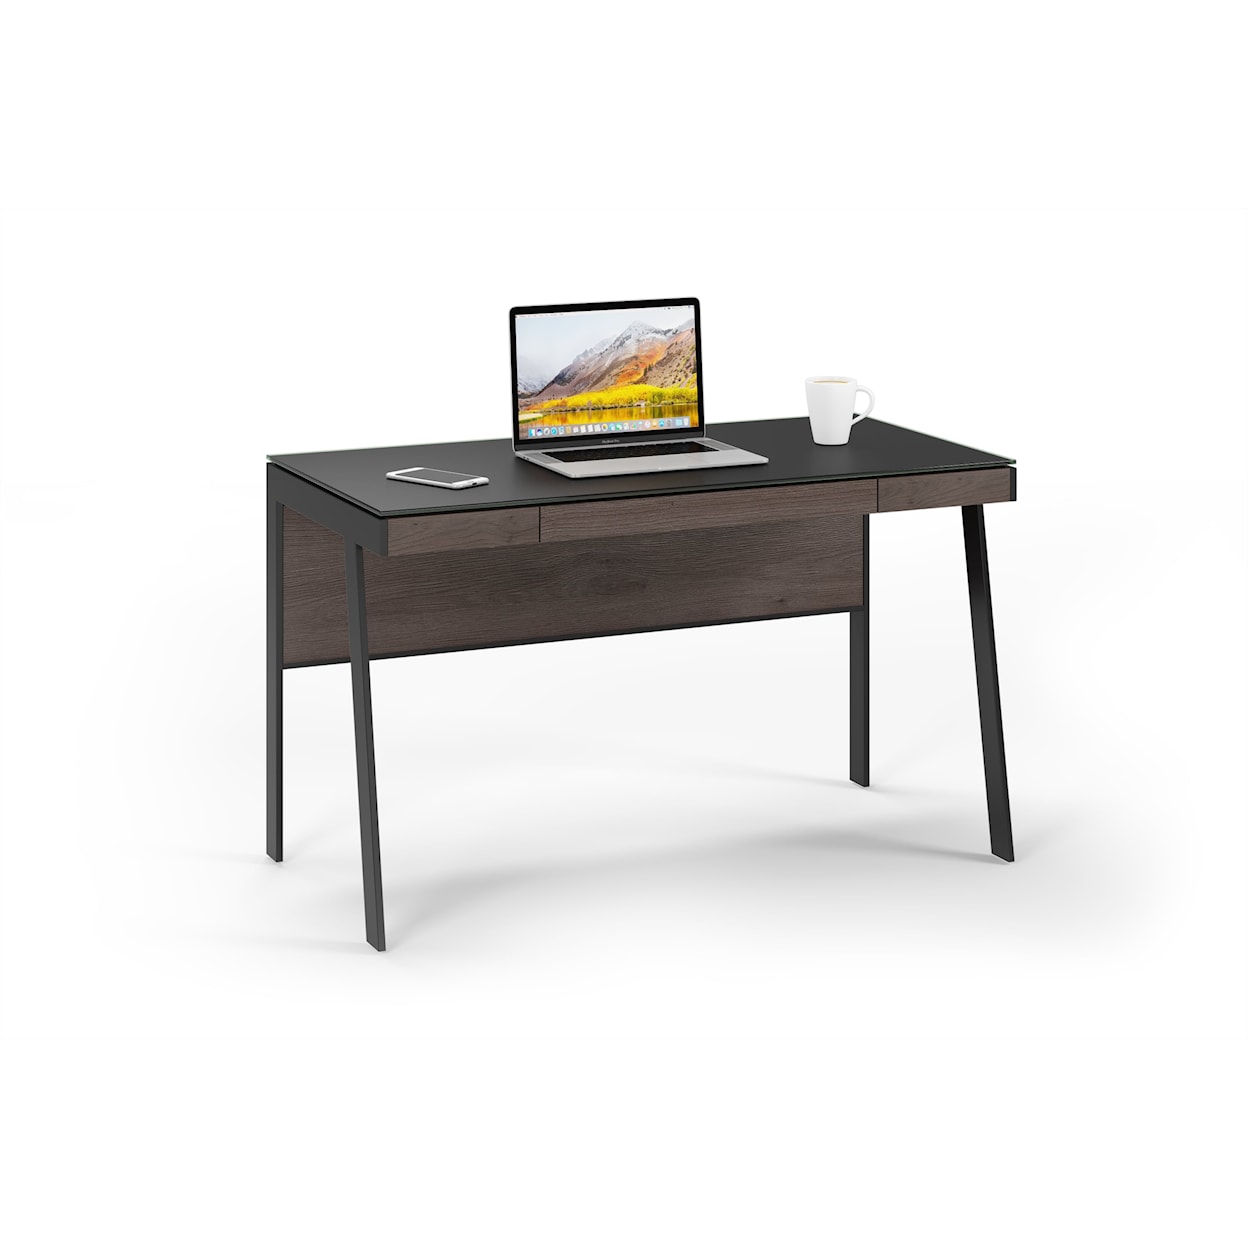 BDI Sigma Compact Desk